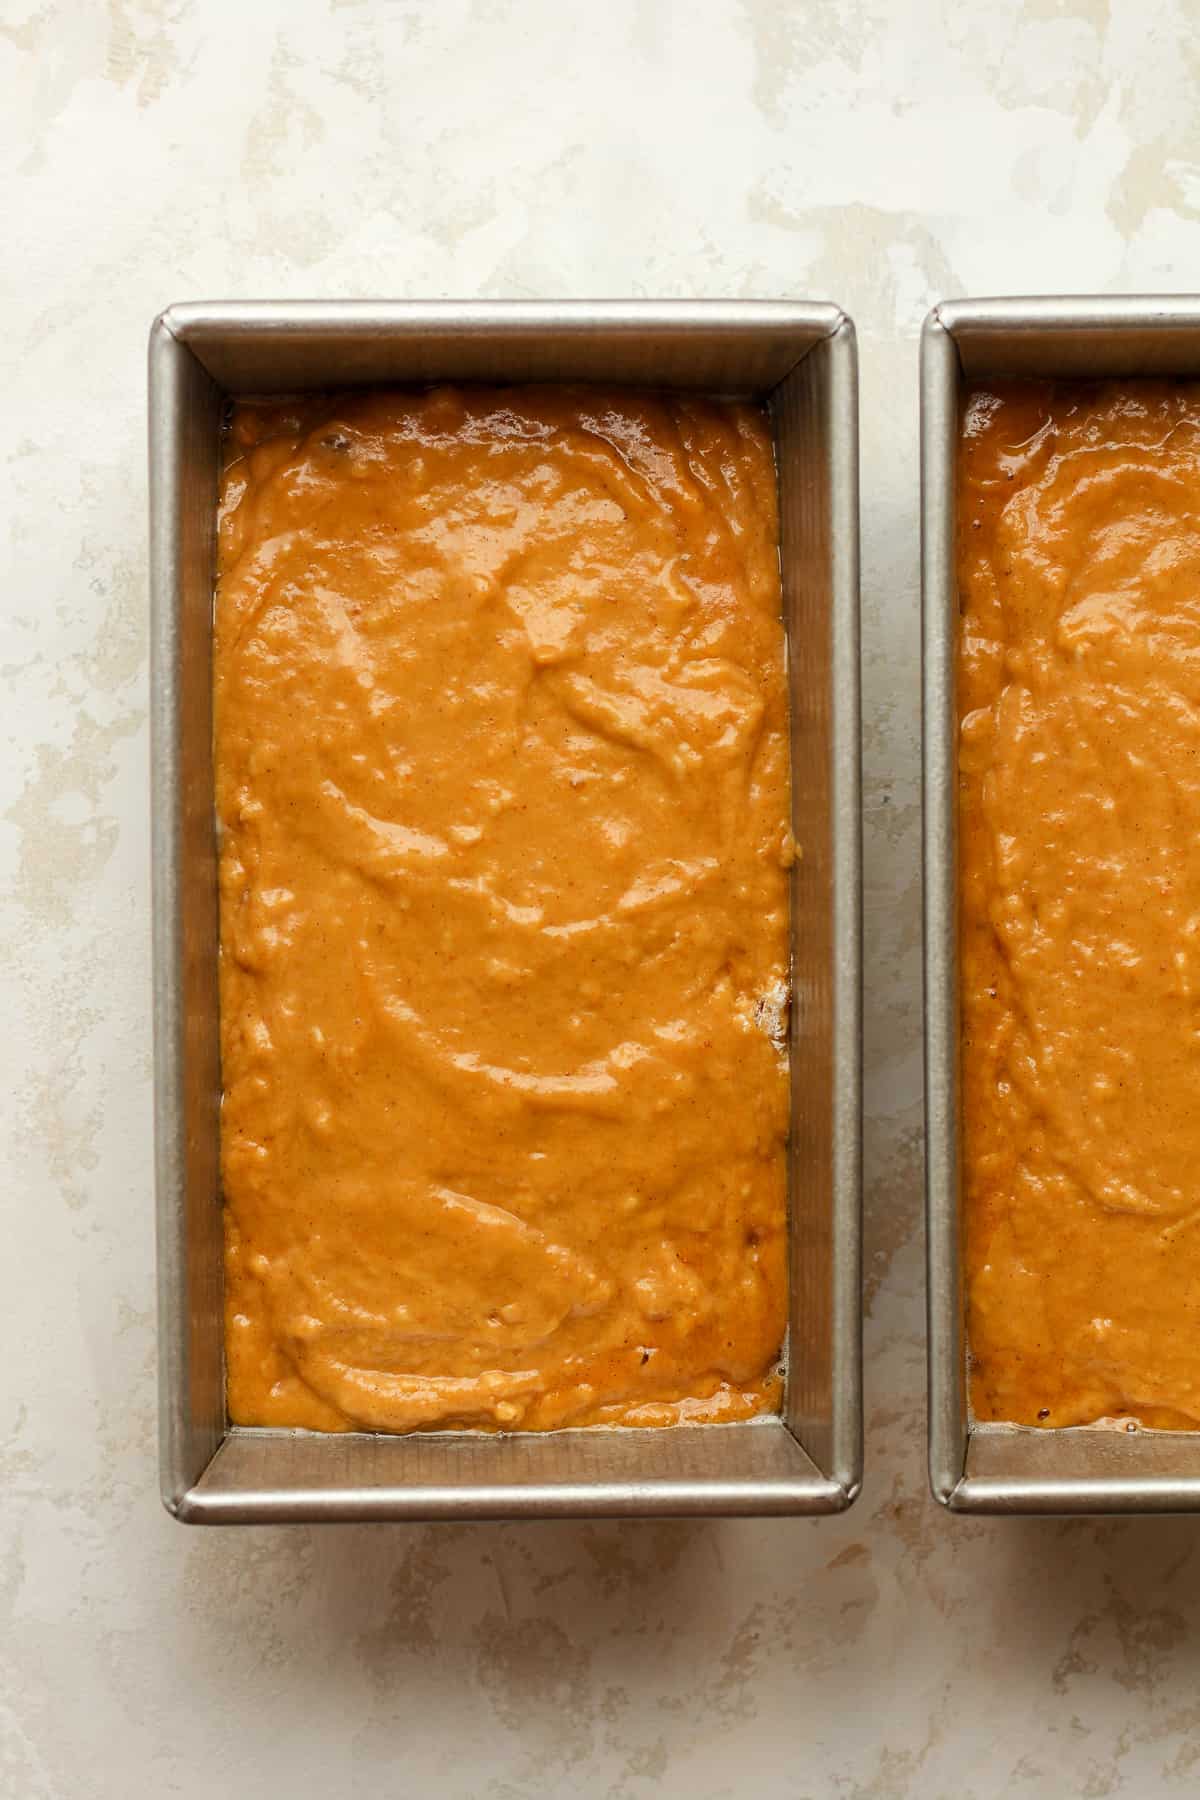 The pumpkin batter in loaf pans.